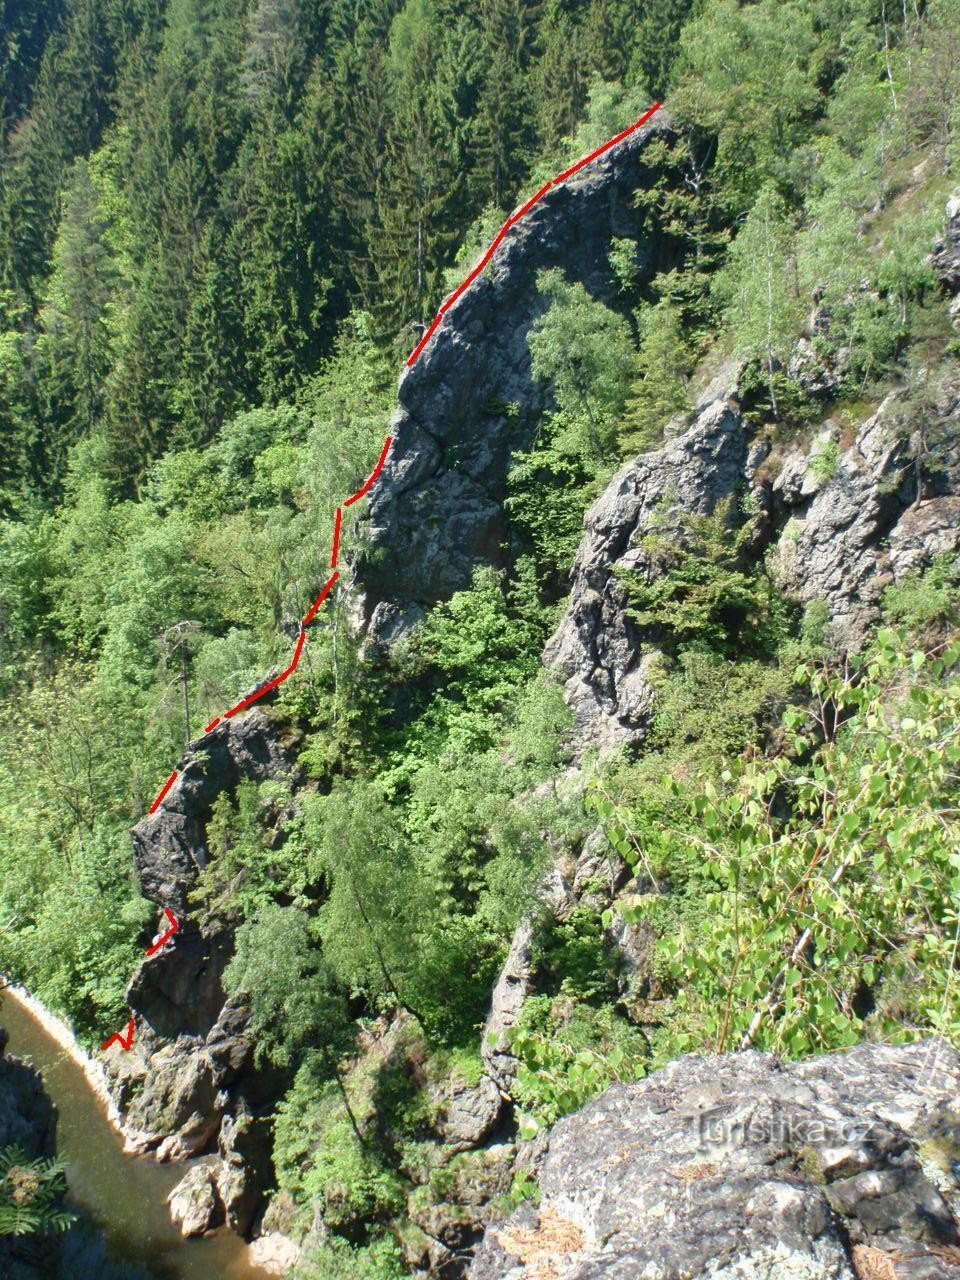 quang cảnh của tảng đá; nguồn: www.lesycr.cz